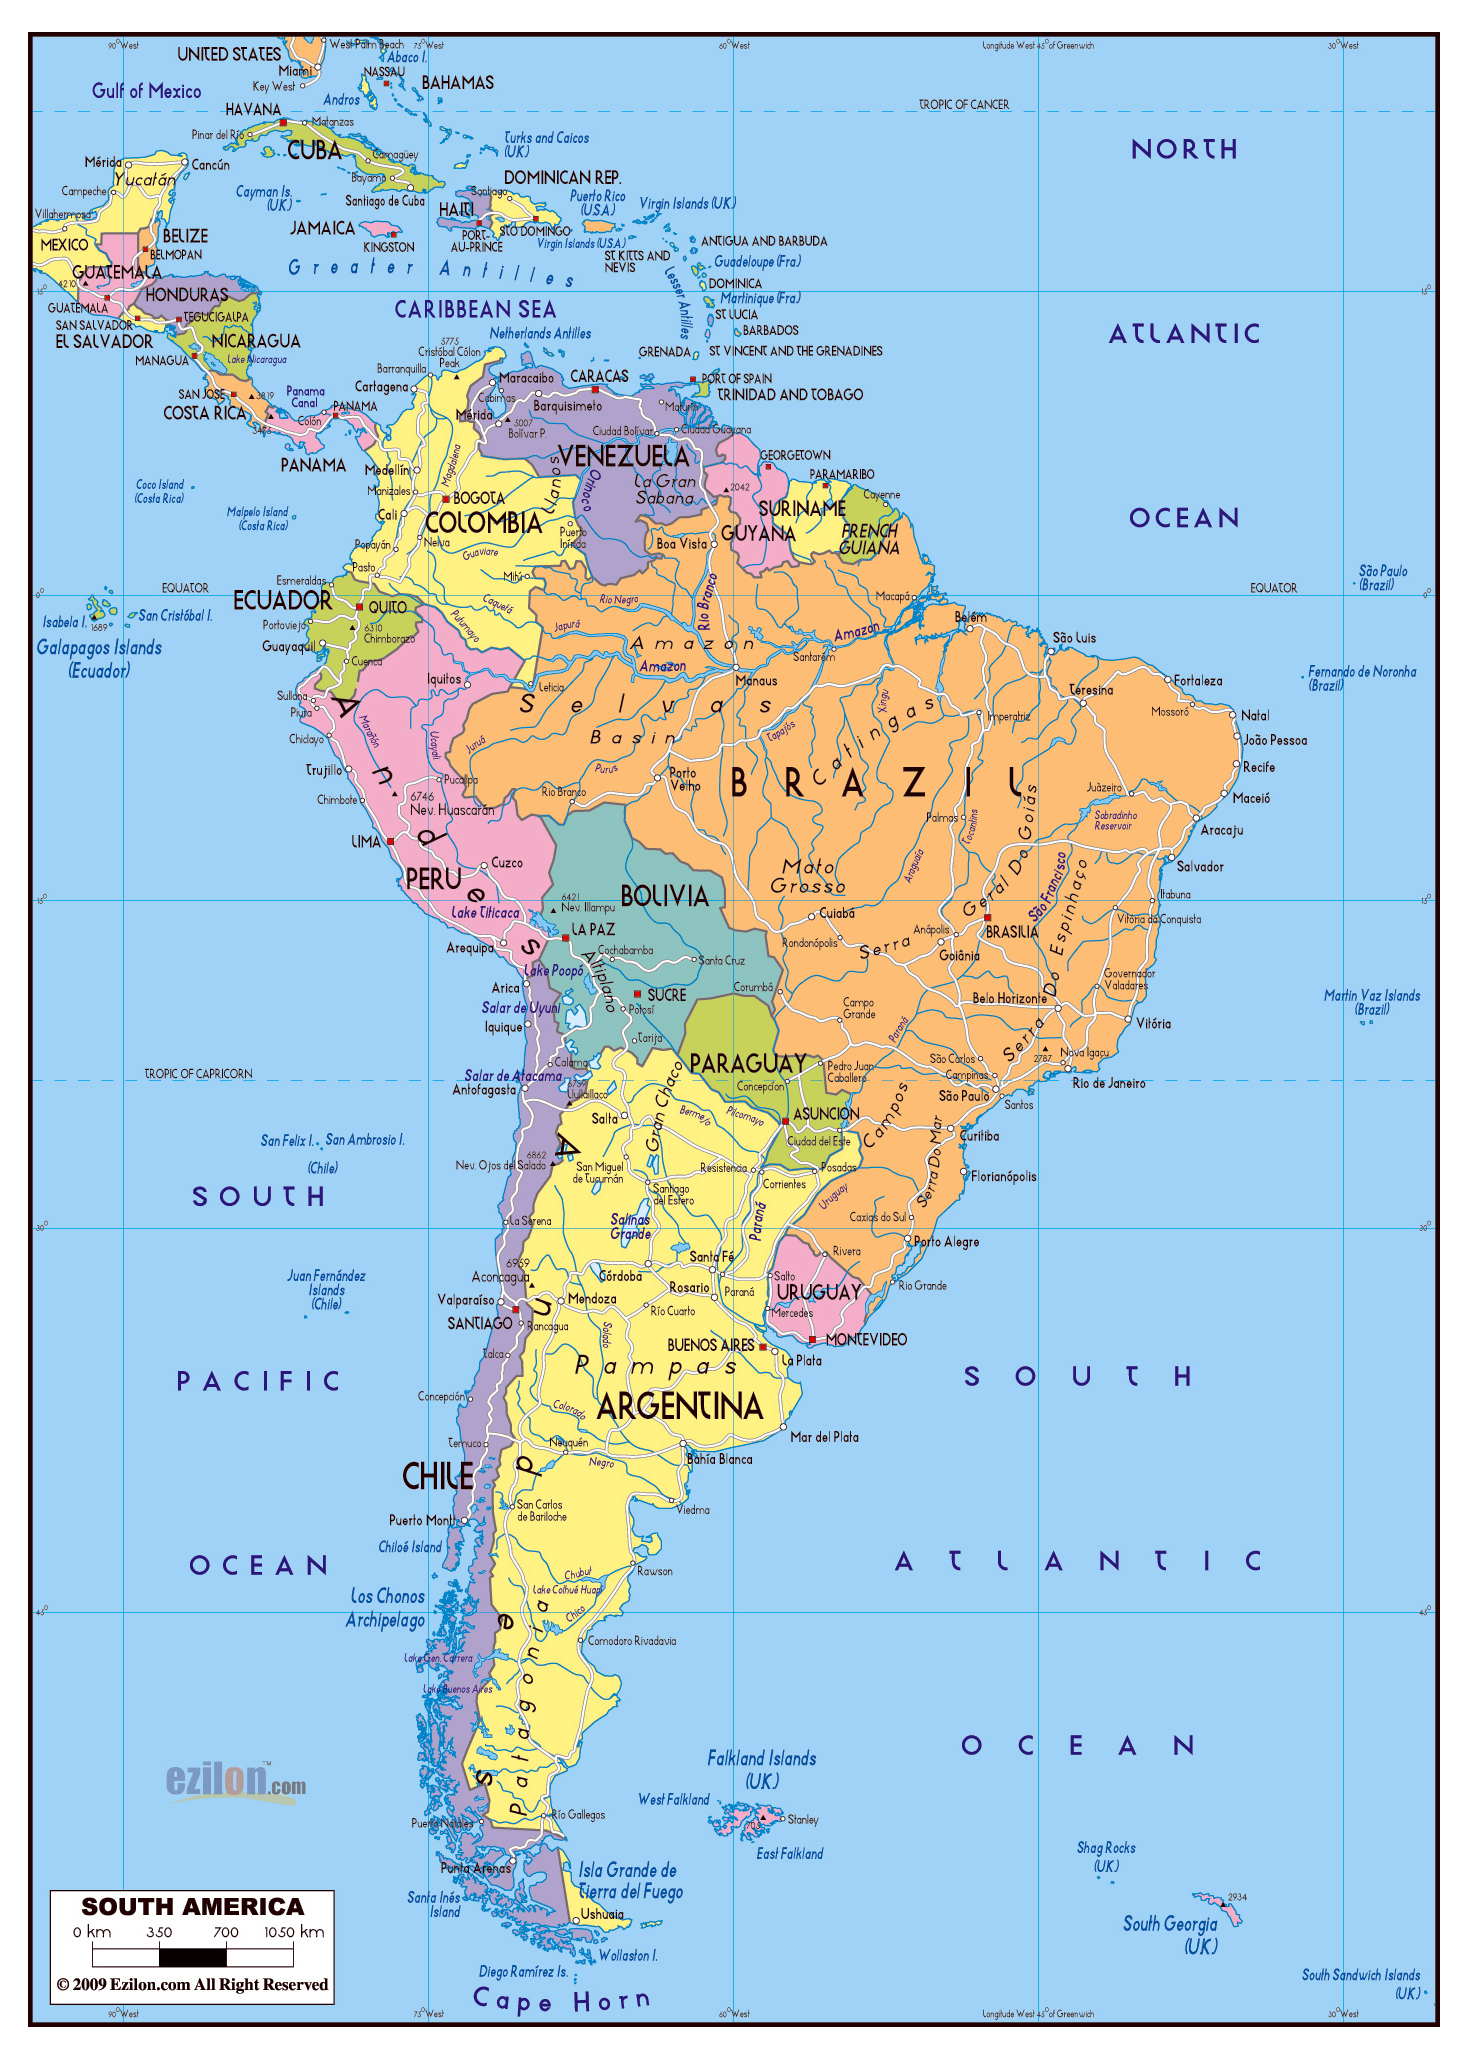 mapa sudamerica passés au crible